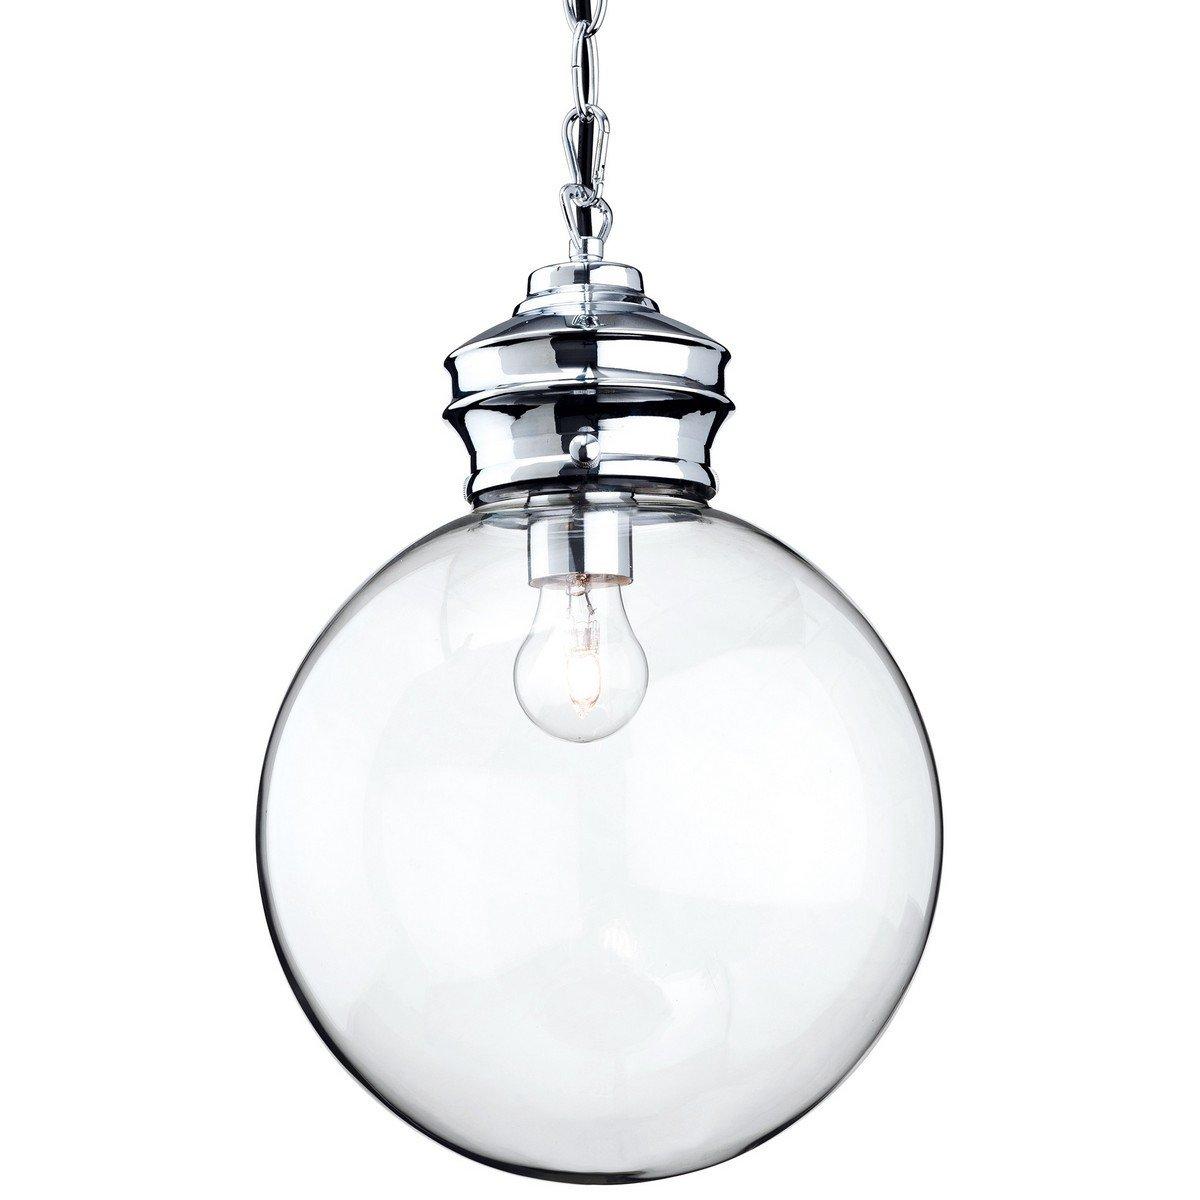 Omar 1 Light Globe Ceiling Pendant Chrome Clear Glass E27